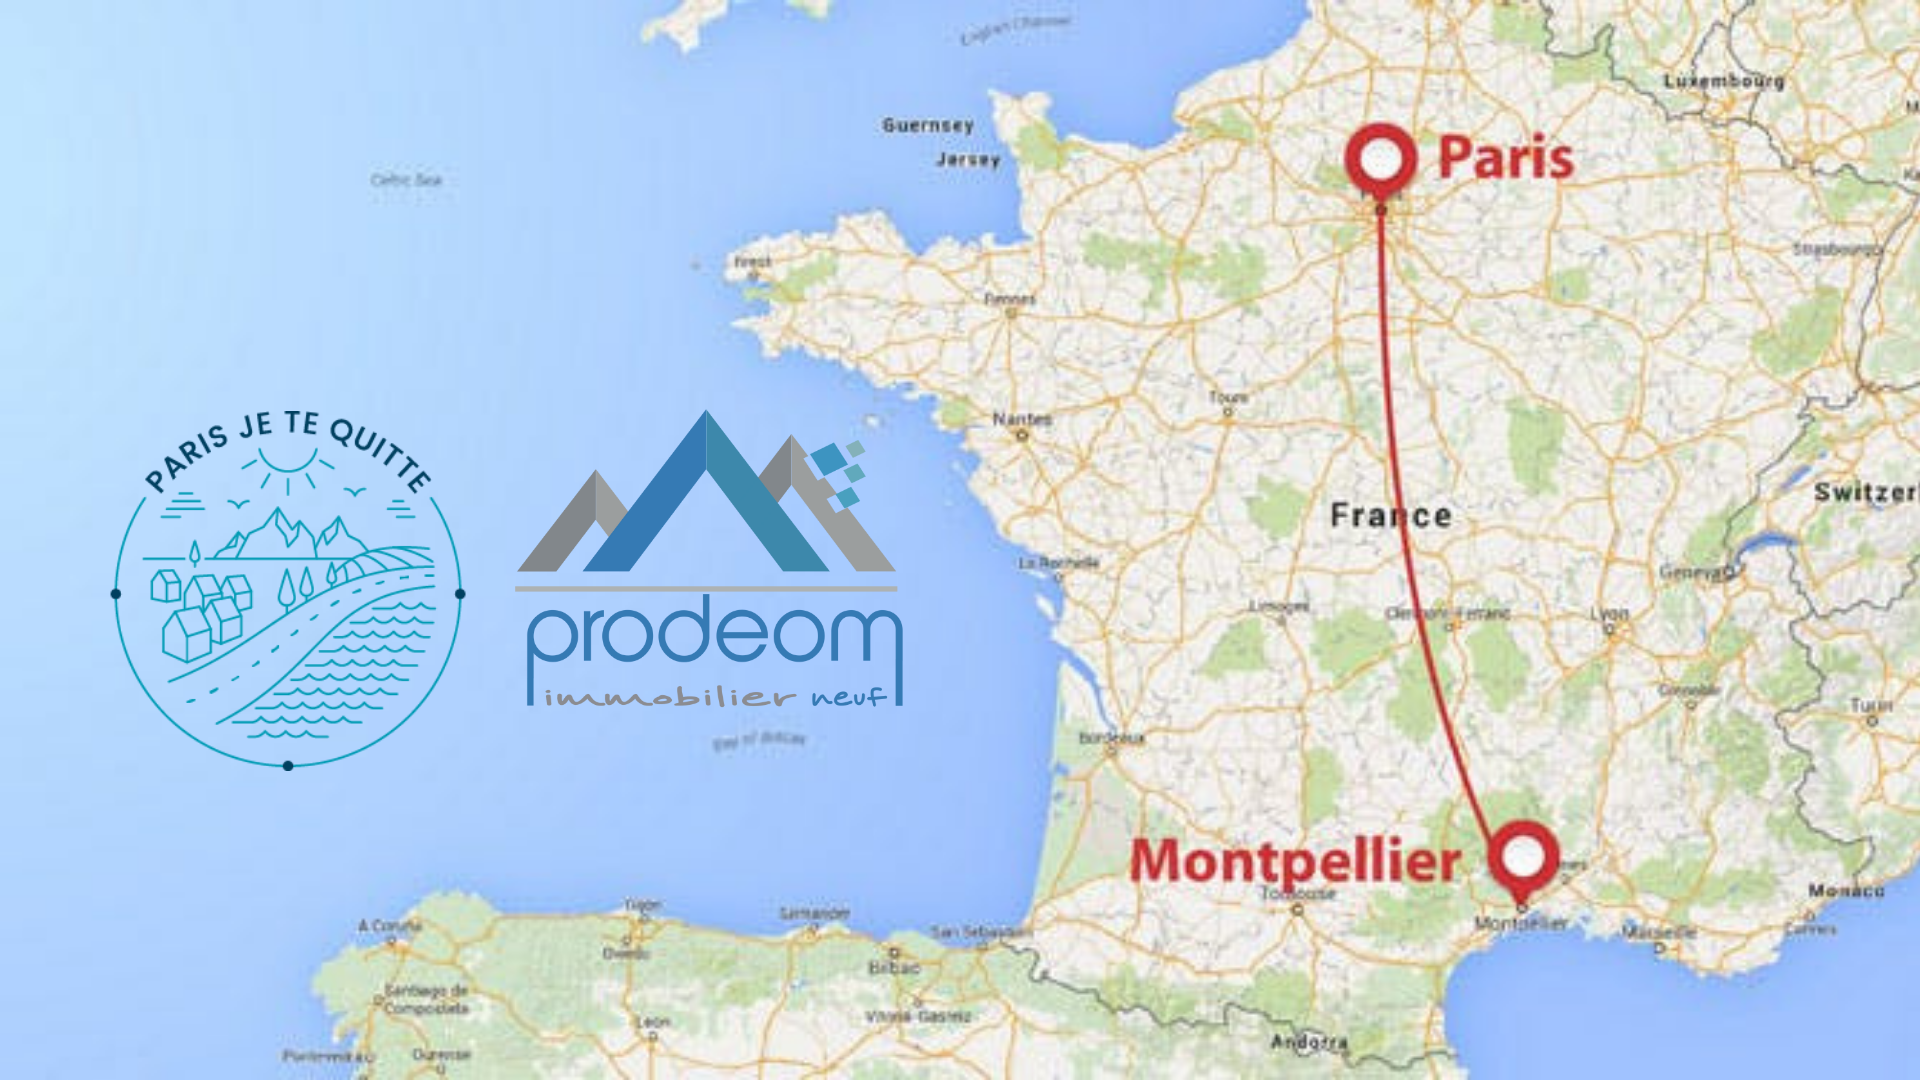 S’installer à Montpellier :  Prodeom ...